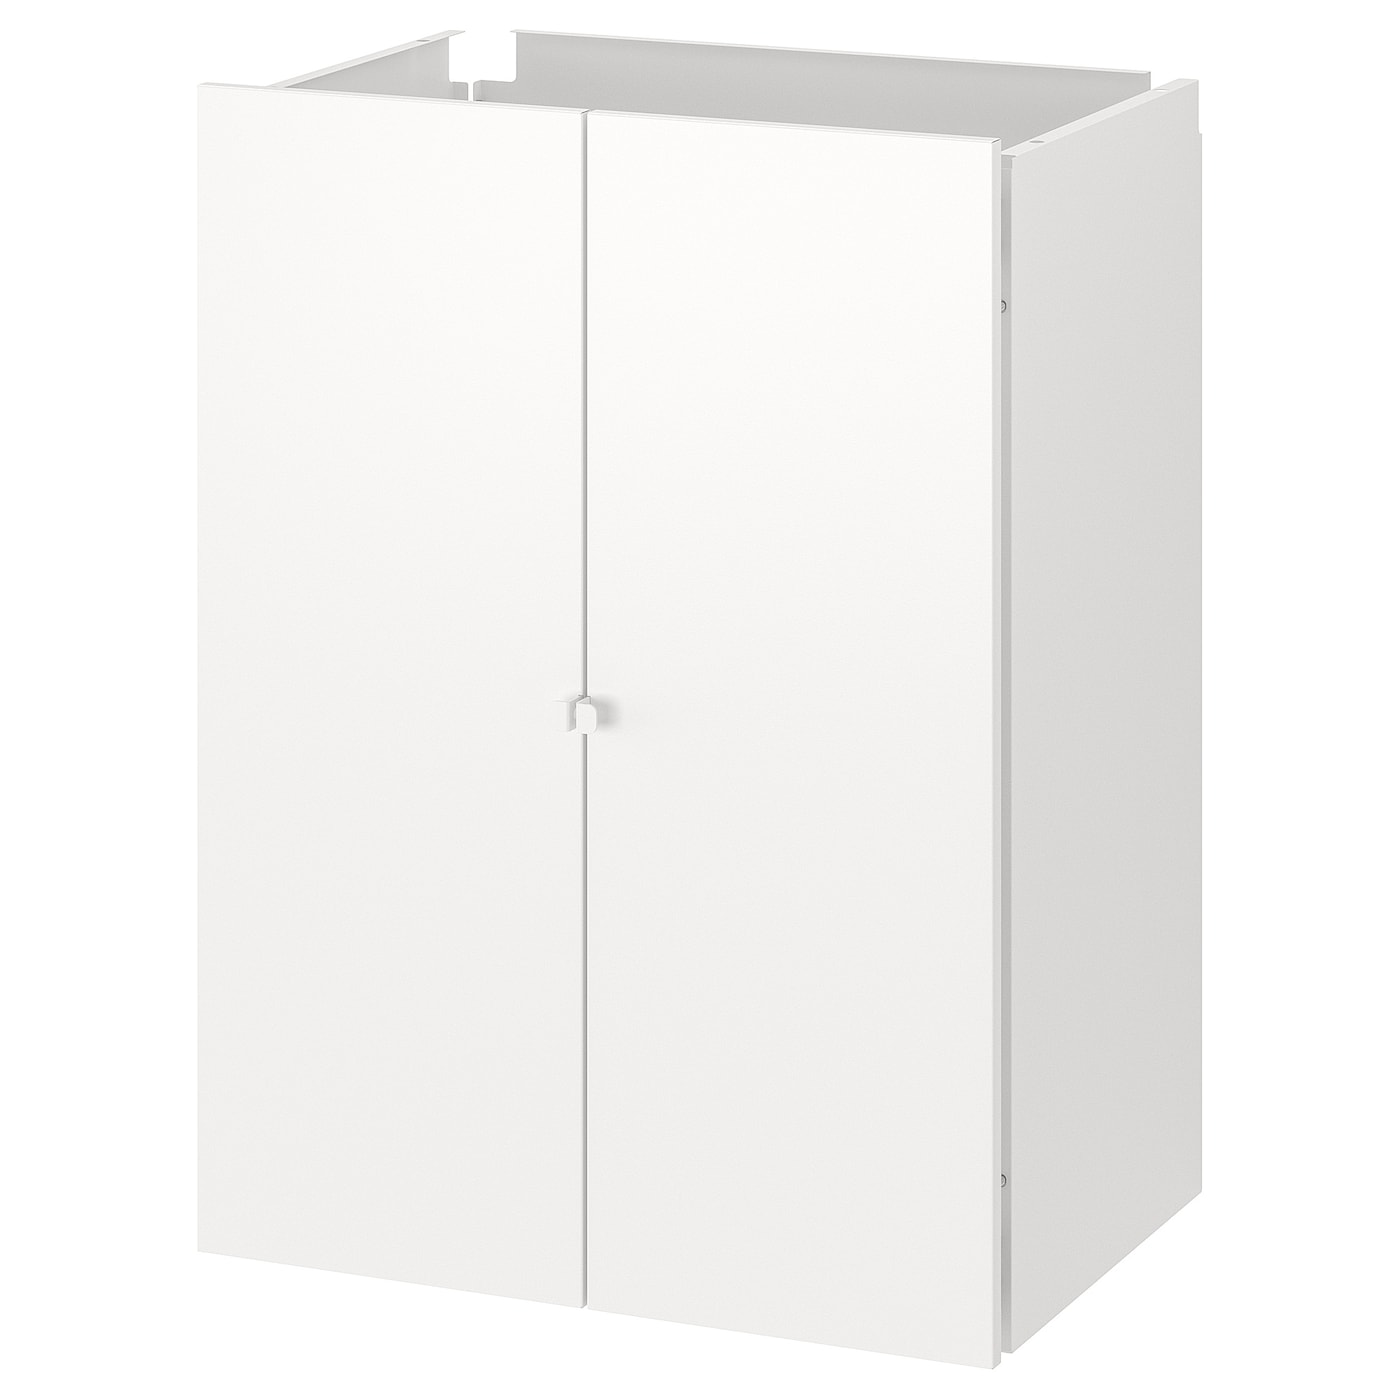 Комплект дверей и стенок для стеллажа - JOSTEIN IKEA/ЙОСТЕЙН  ИКЕА, 82х60 см, белый